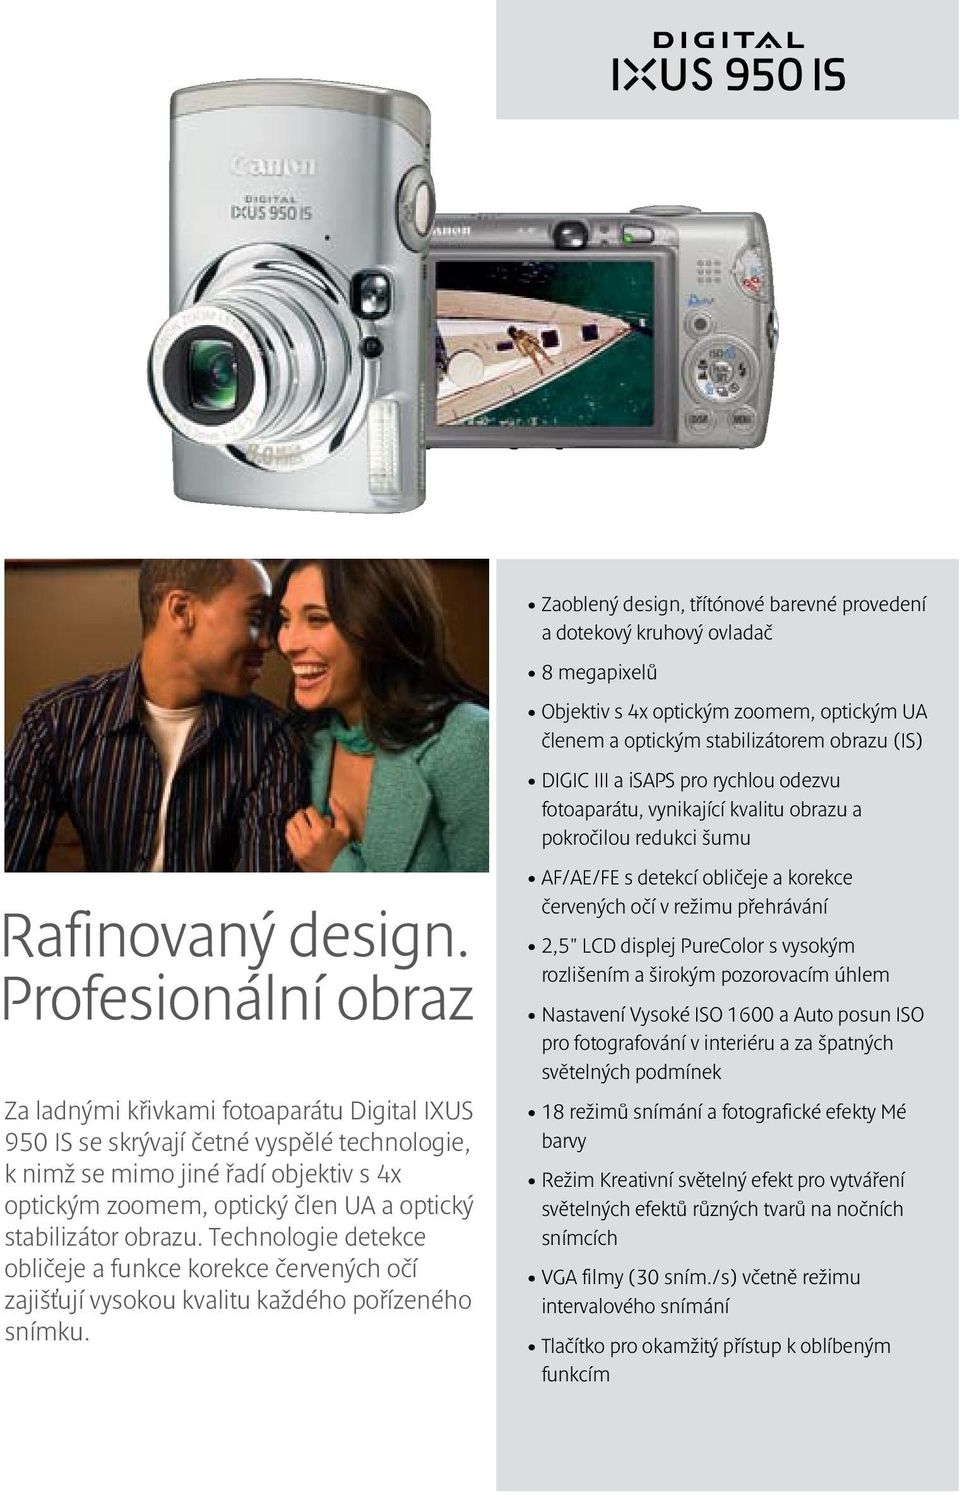 Profesionální obraz Za ladnými křivkami fotoaparátu Digital IXUS 950 IS se skrývají četné vyspělé technologie, k nimž se mimo jiné řadí objektiv s 4x optickým zoomem, optický člen UA a optický